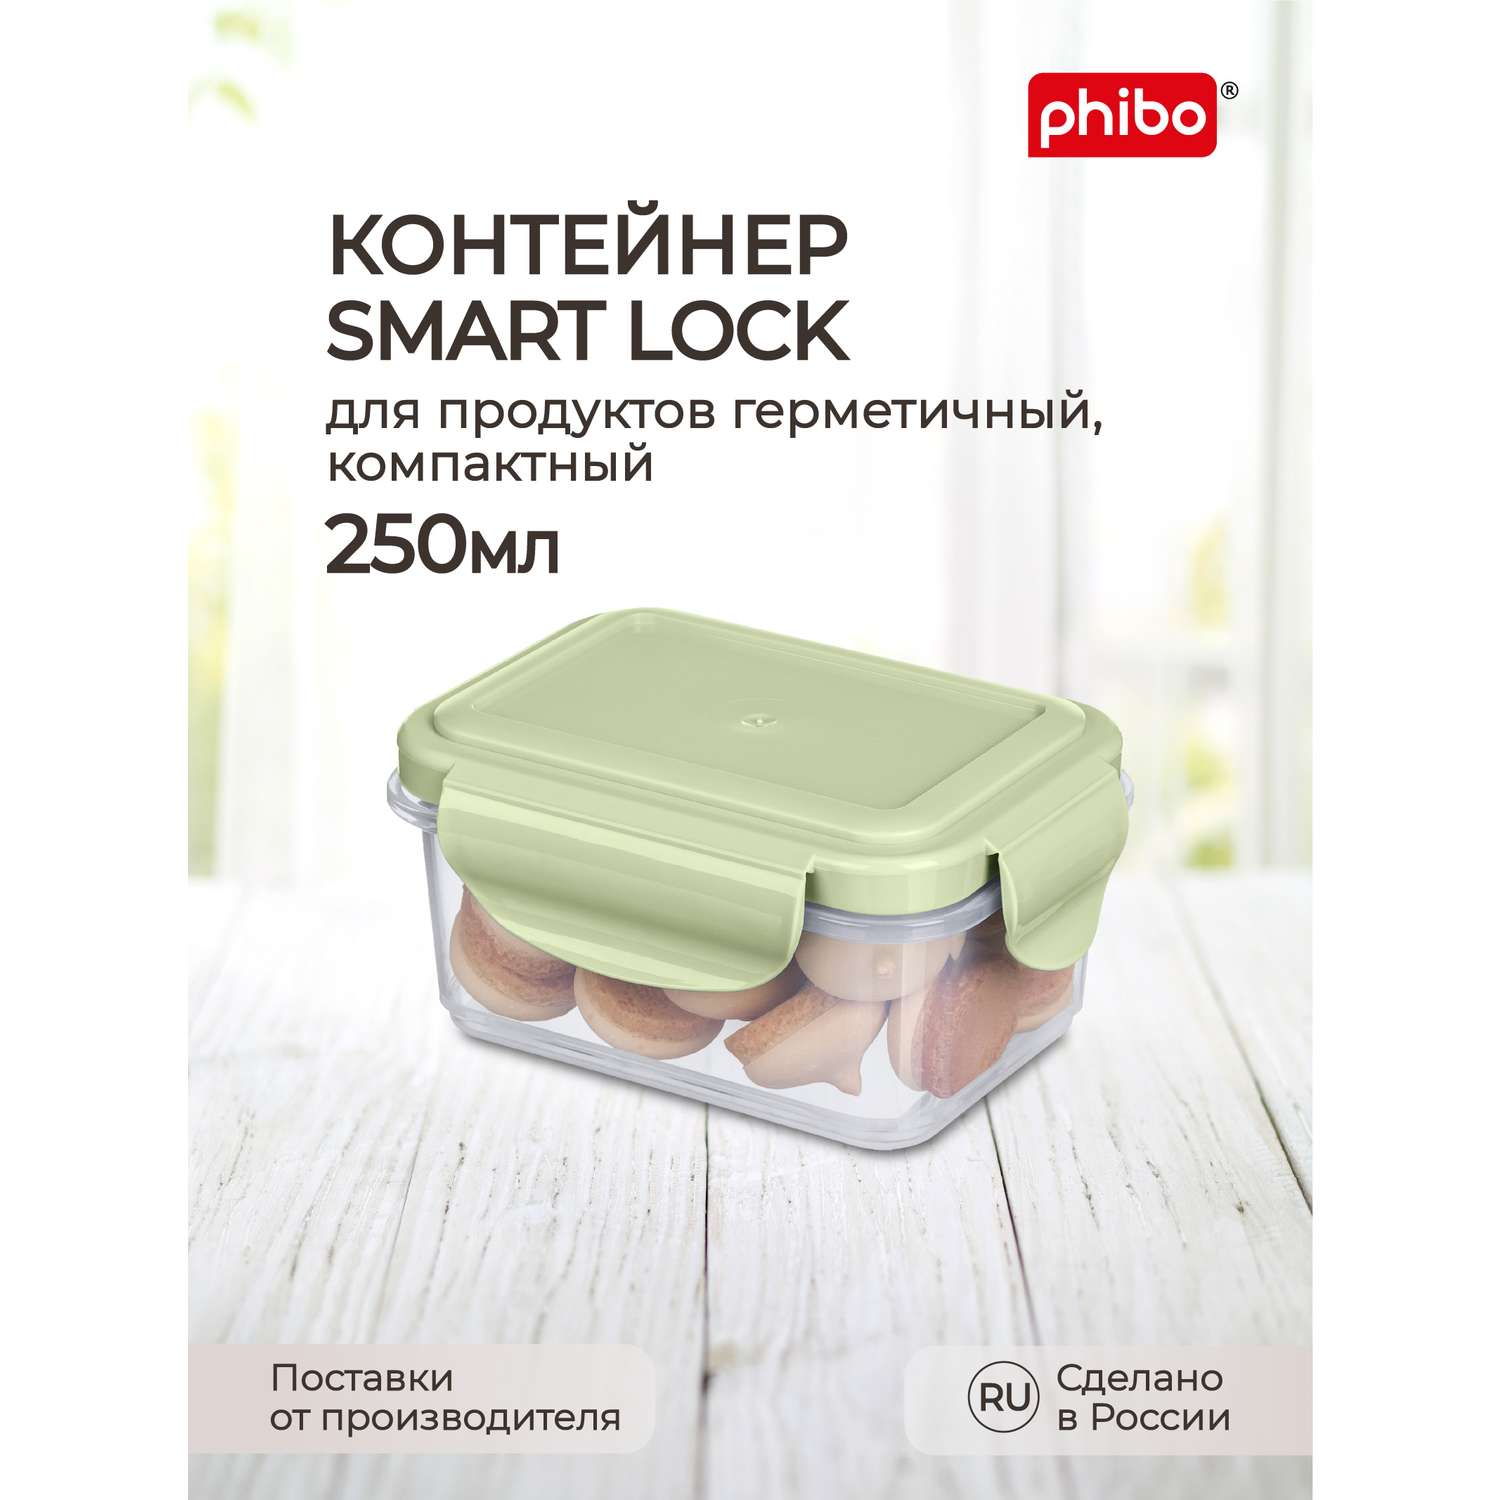 Контейнер Phibo для продуктов герметичный Smart Lock прямоугольный 0.25л зеленый - фото 1